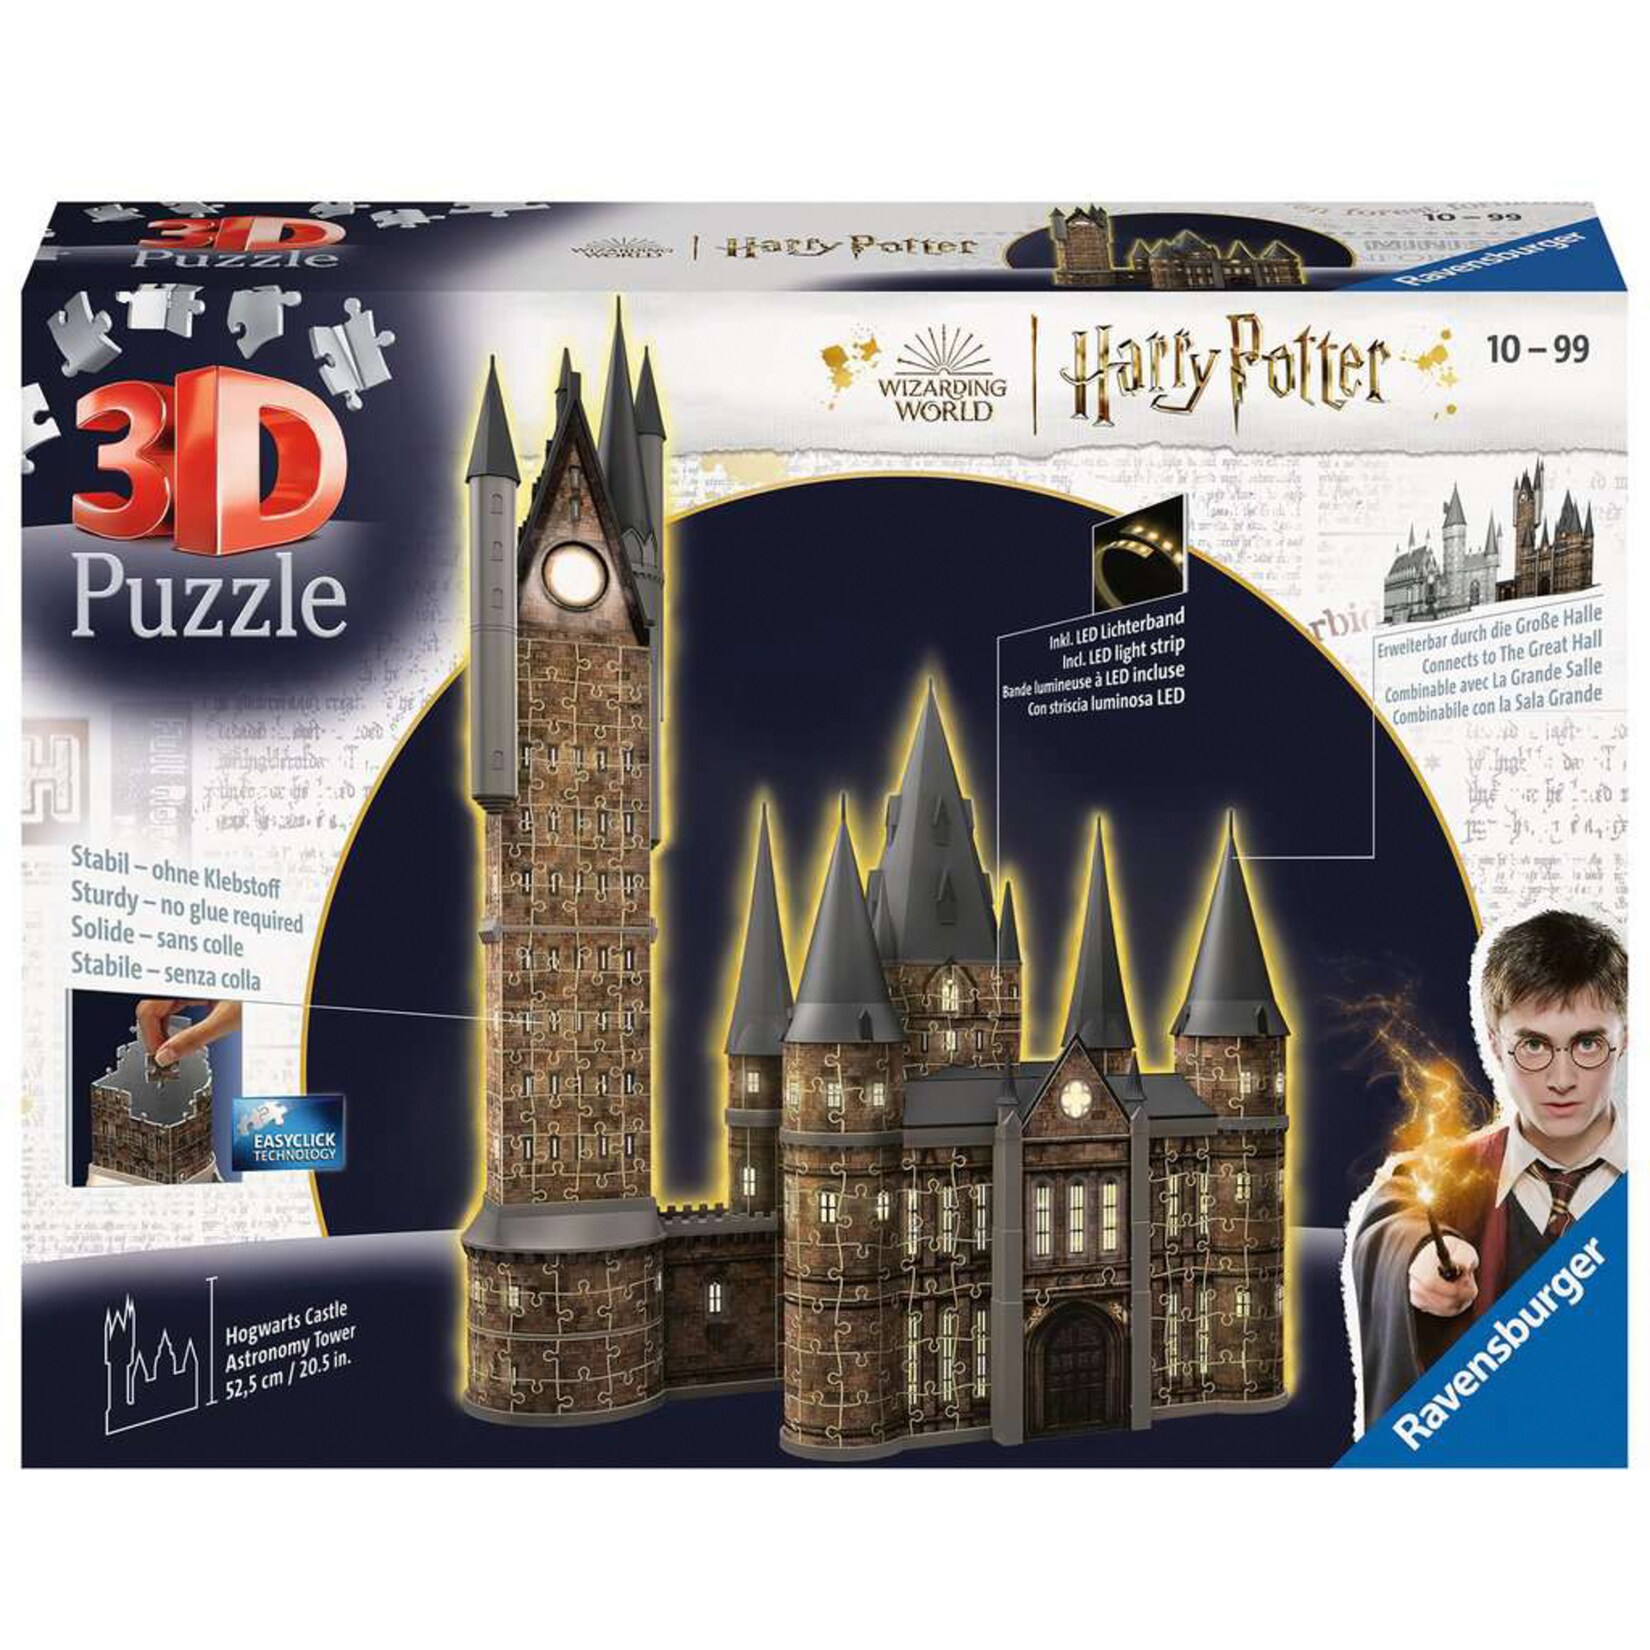 Ravensburger Puzzle 3D Puzzle Harry Potter Hogwarts Schloss - Astronomieturm Night Edition